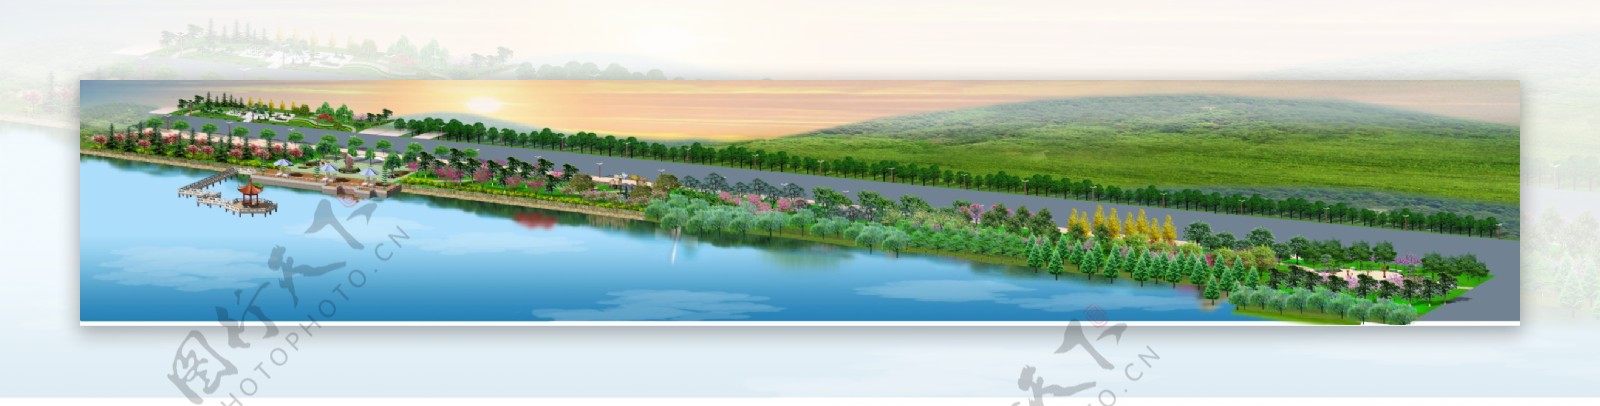 滨河风光带景观设计效果图